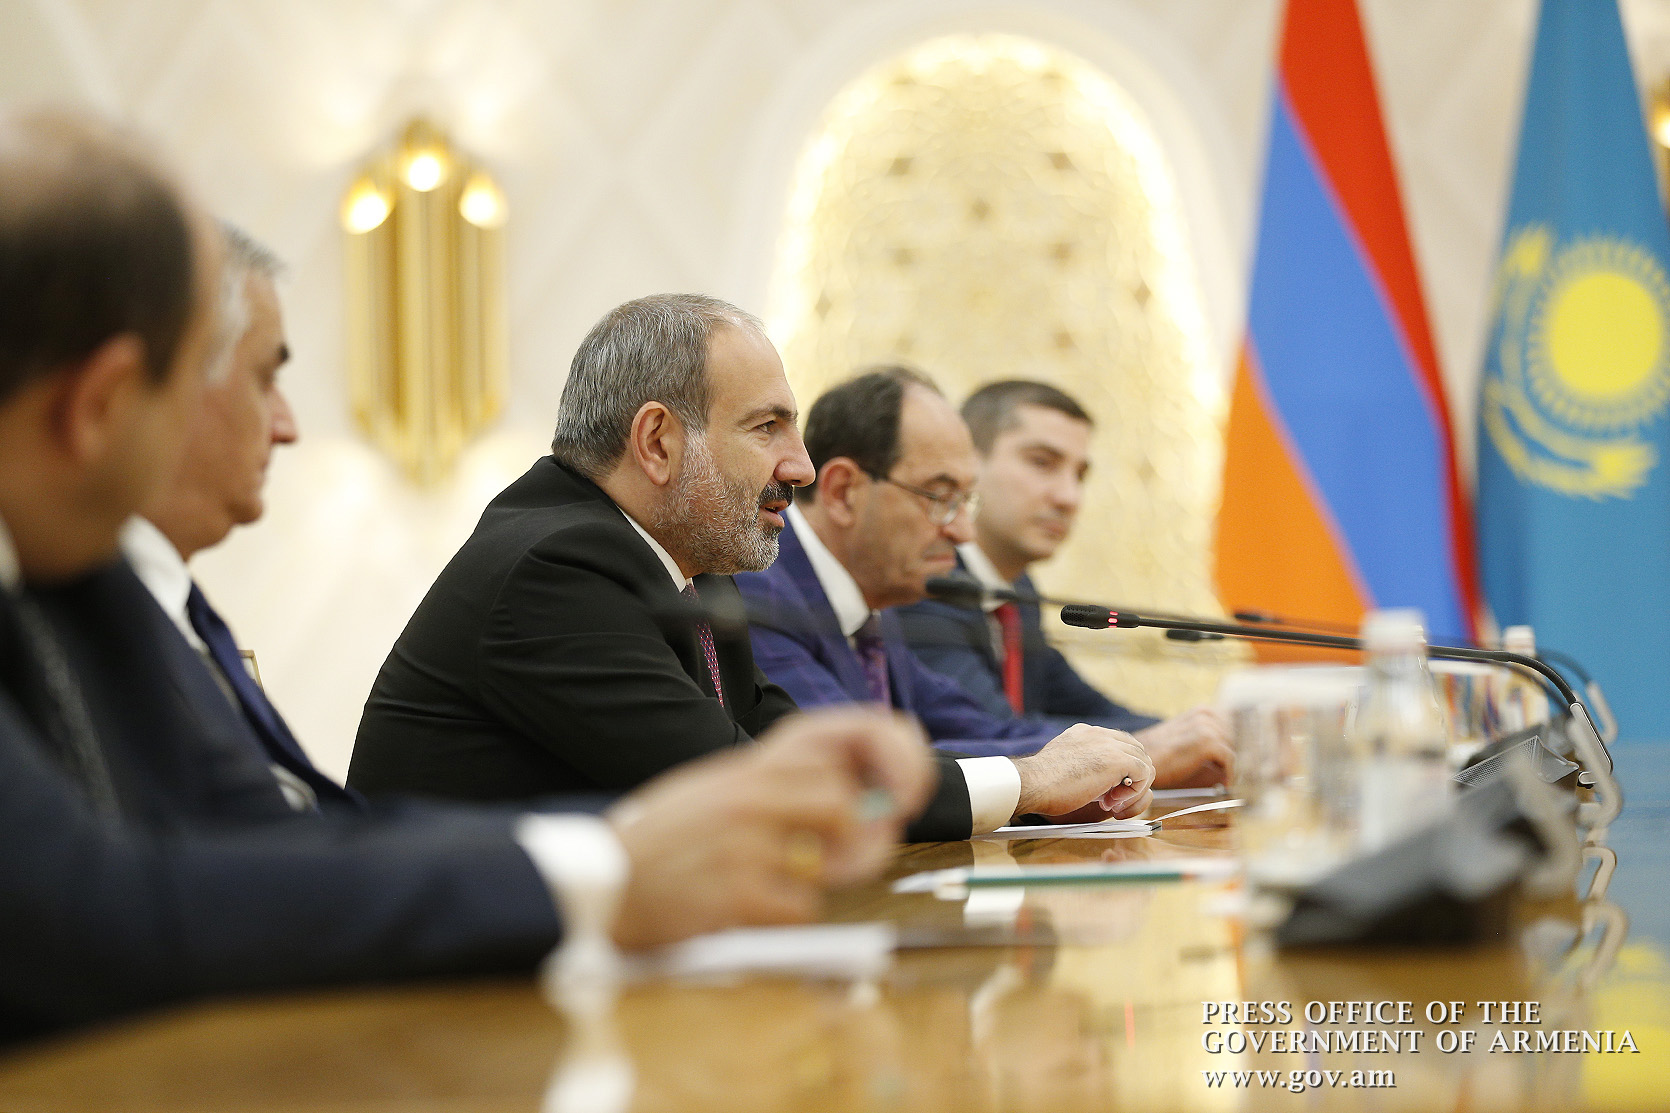 Встреча с Путиным не состоялась: Пашинян срочно возвращается в Армению? (обновлено)